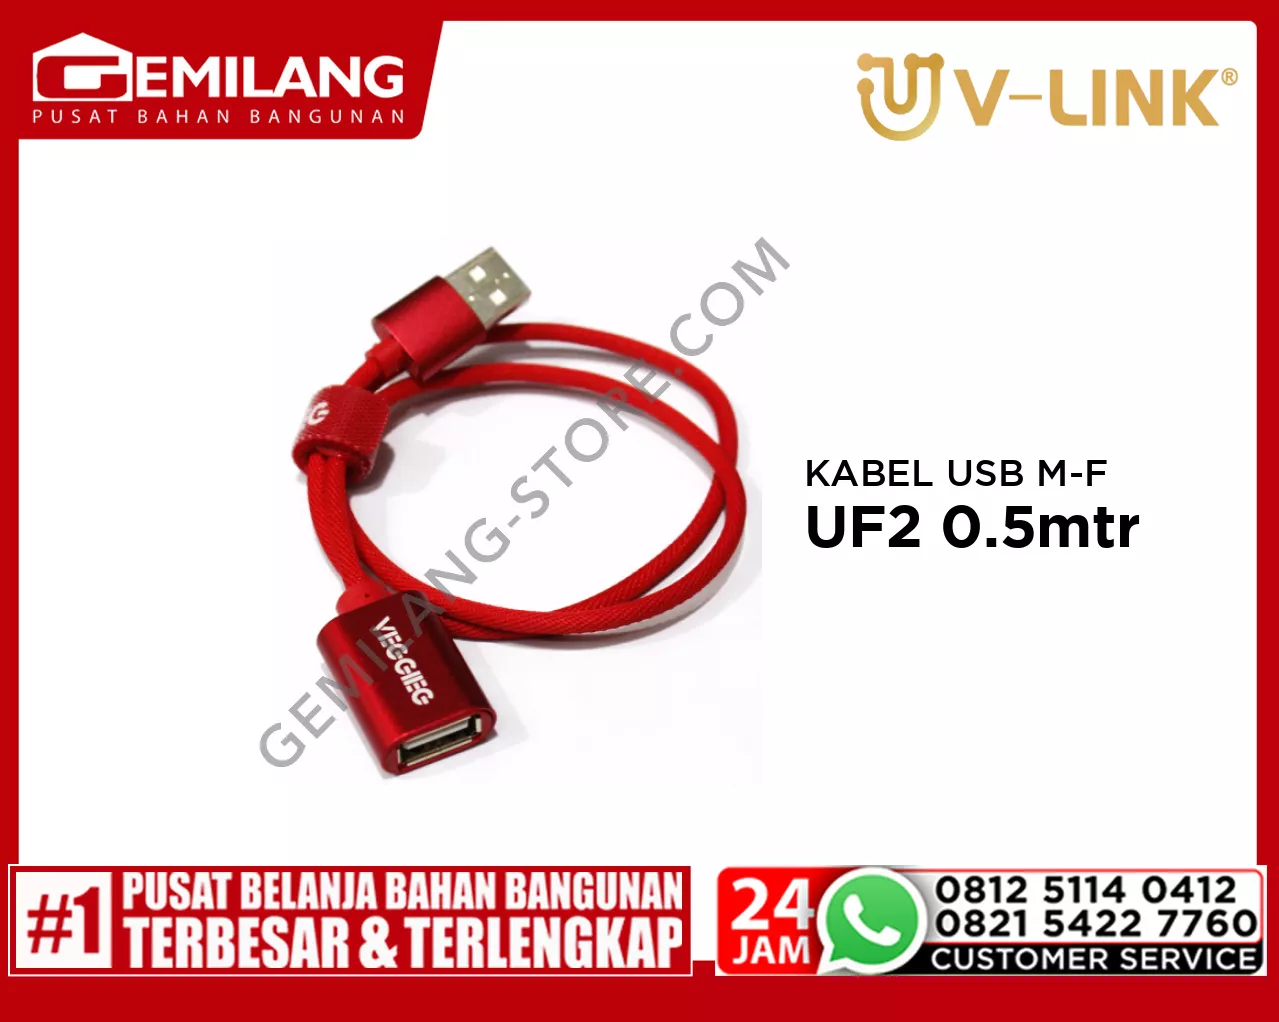 V-LINK KABEL USB MALE TO FEMALE VEGGIEG UF2 0.5mtr